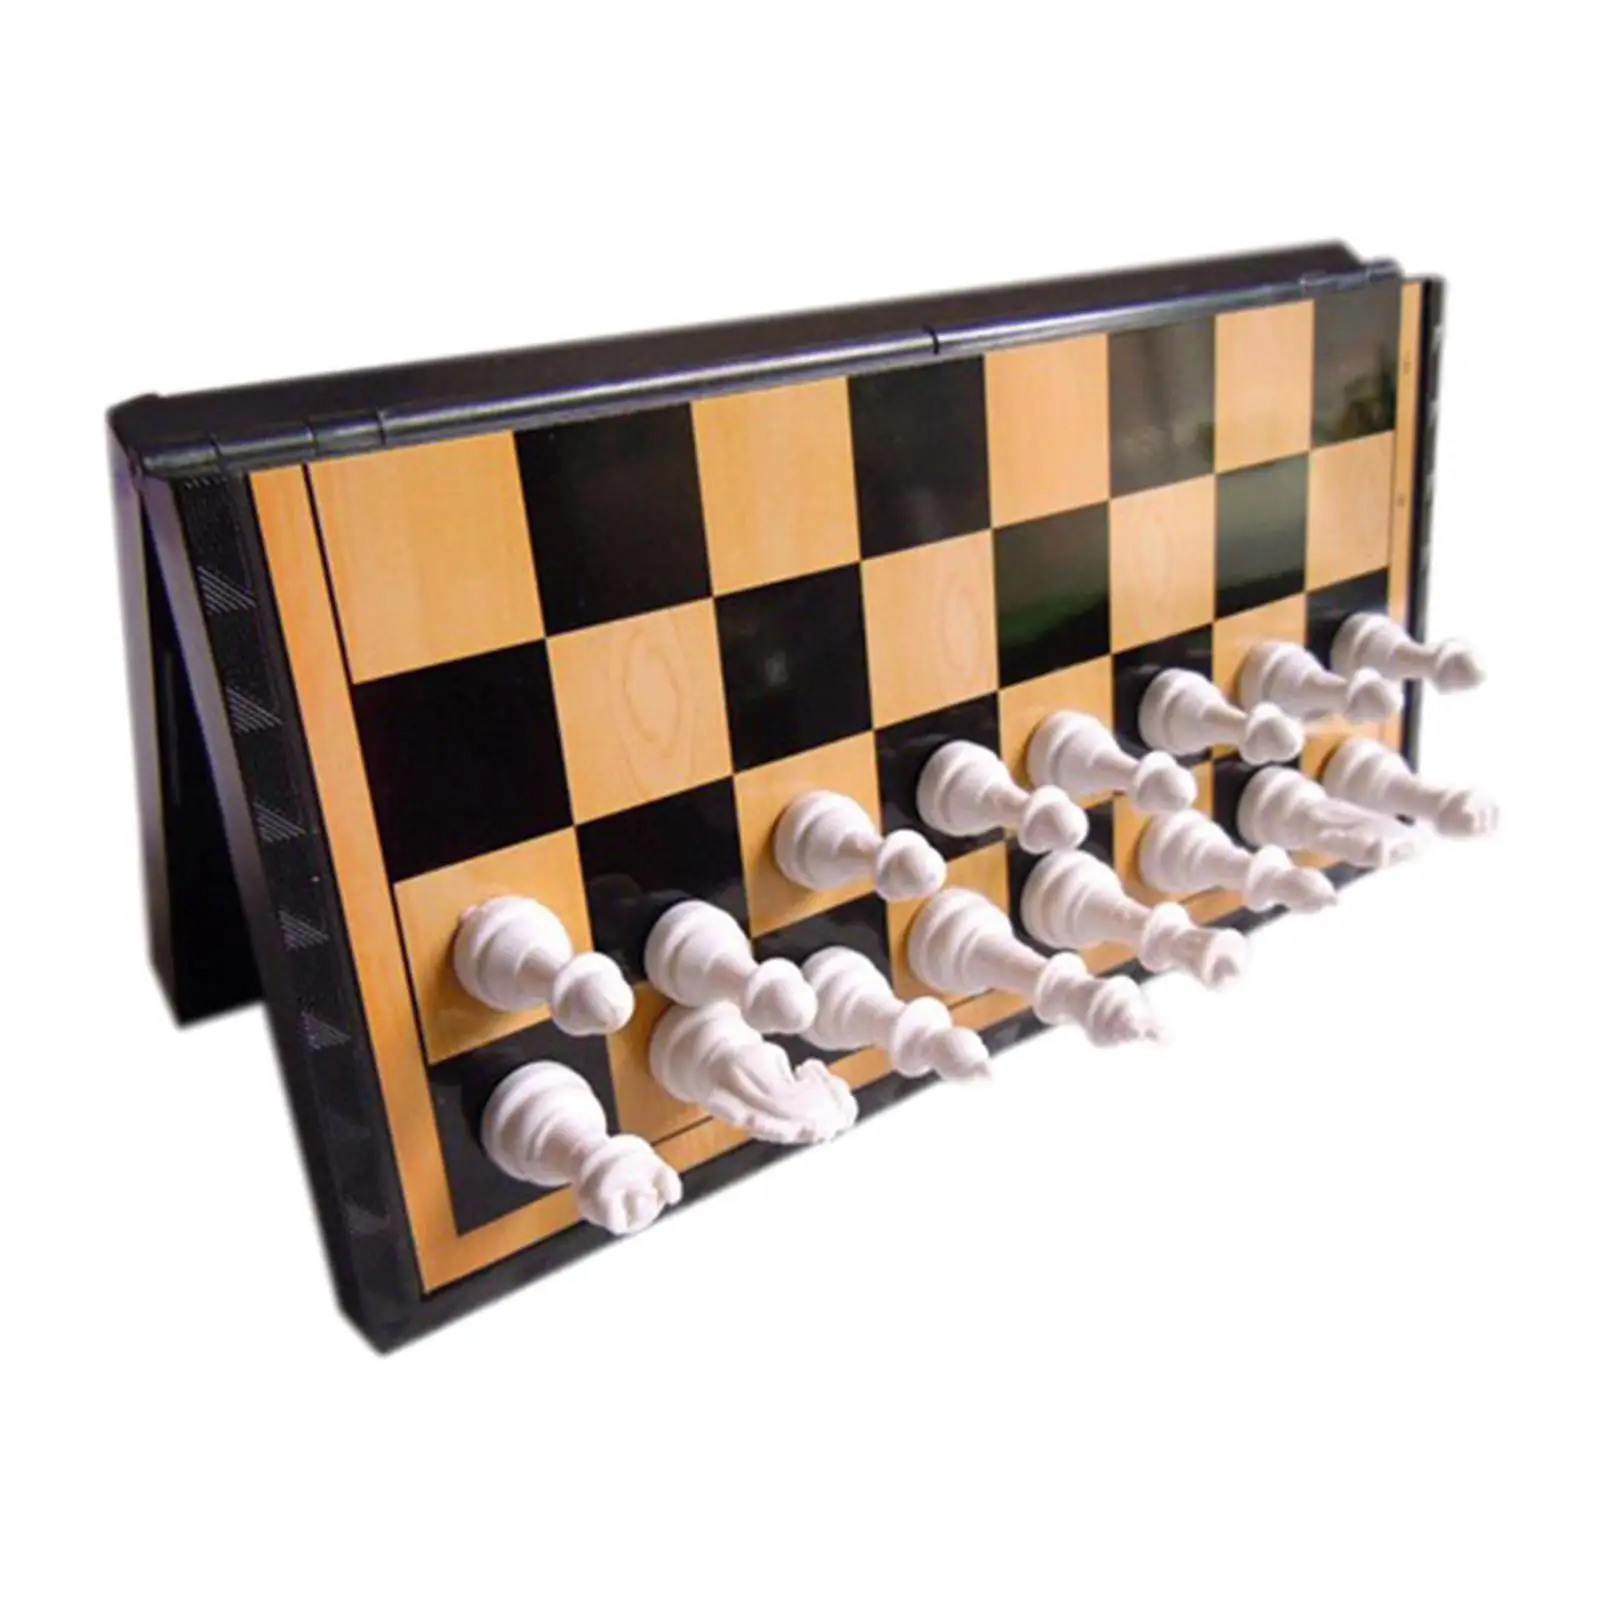 Tabuleiro de dobramento magnético do jogo de xadrez para crianças